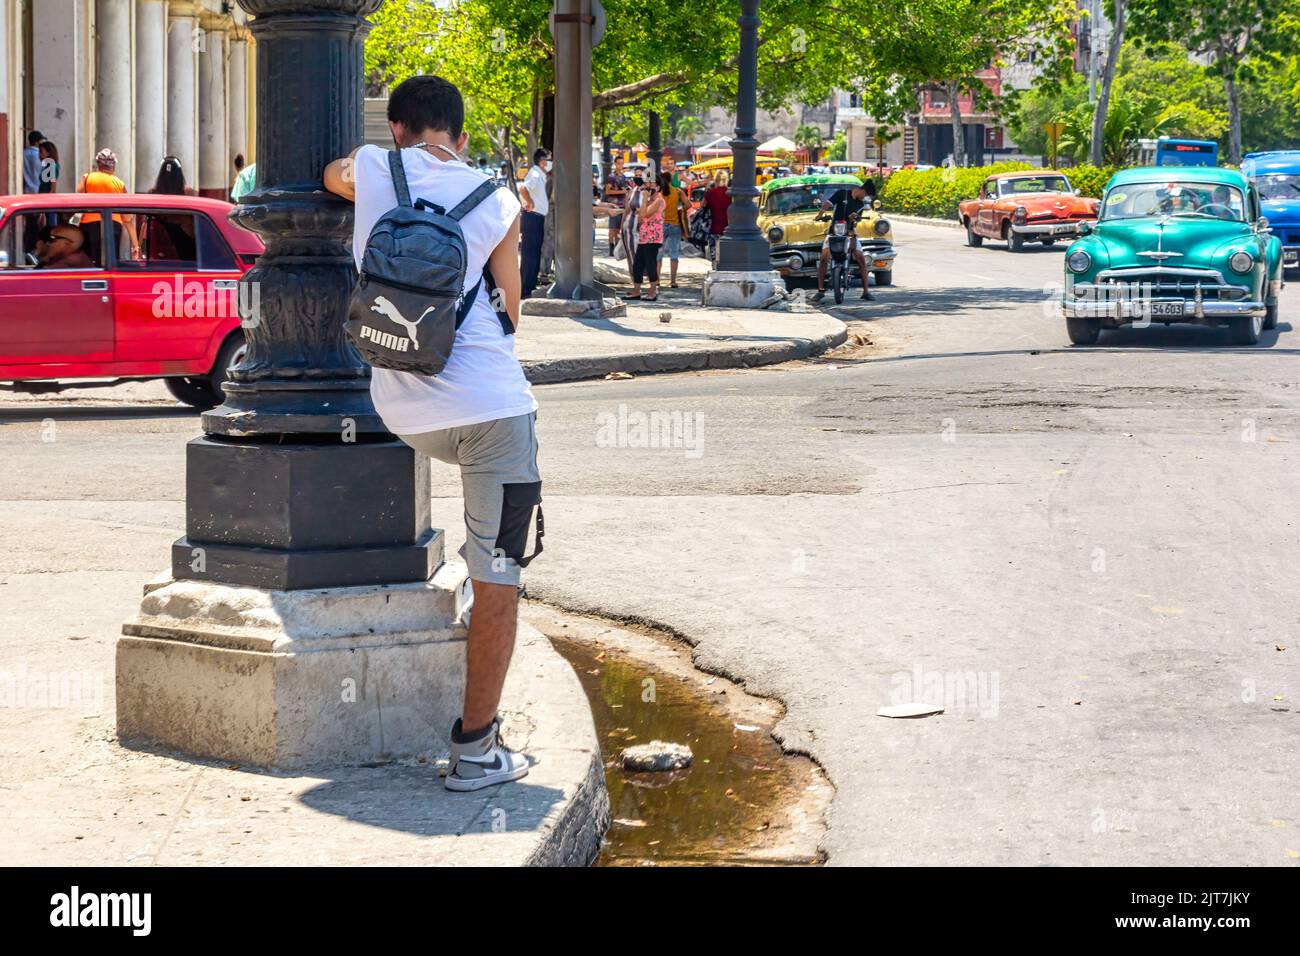 Ein junger Mann lehnt sich an den Pol einer Straßenlaternen. Ein Oldtimer fährt in die Innenstadt. Schmutziges Wasser stagniert auf dem Bürgersteig Stockfoto